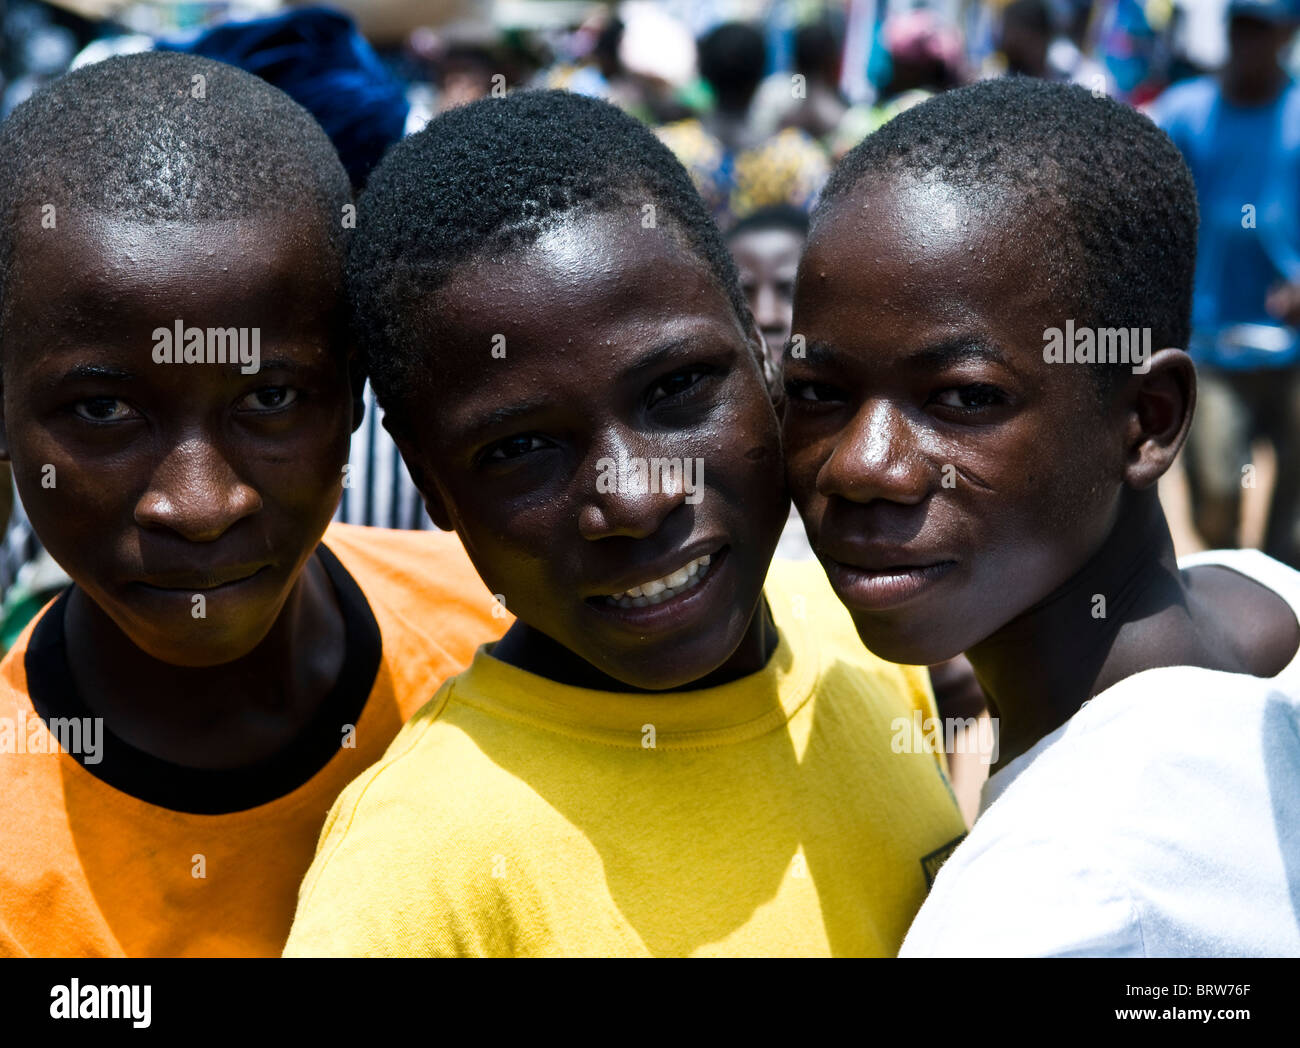 Togoische Jugend stoppen für ein Bild. Stockfoto